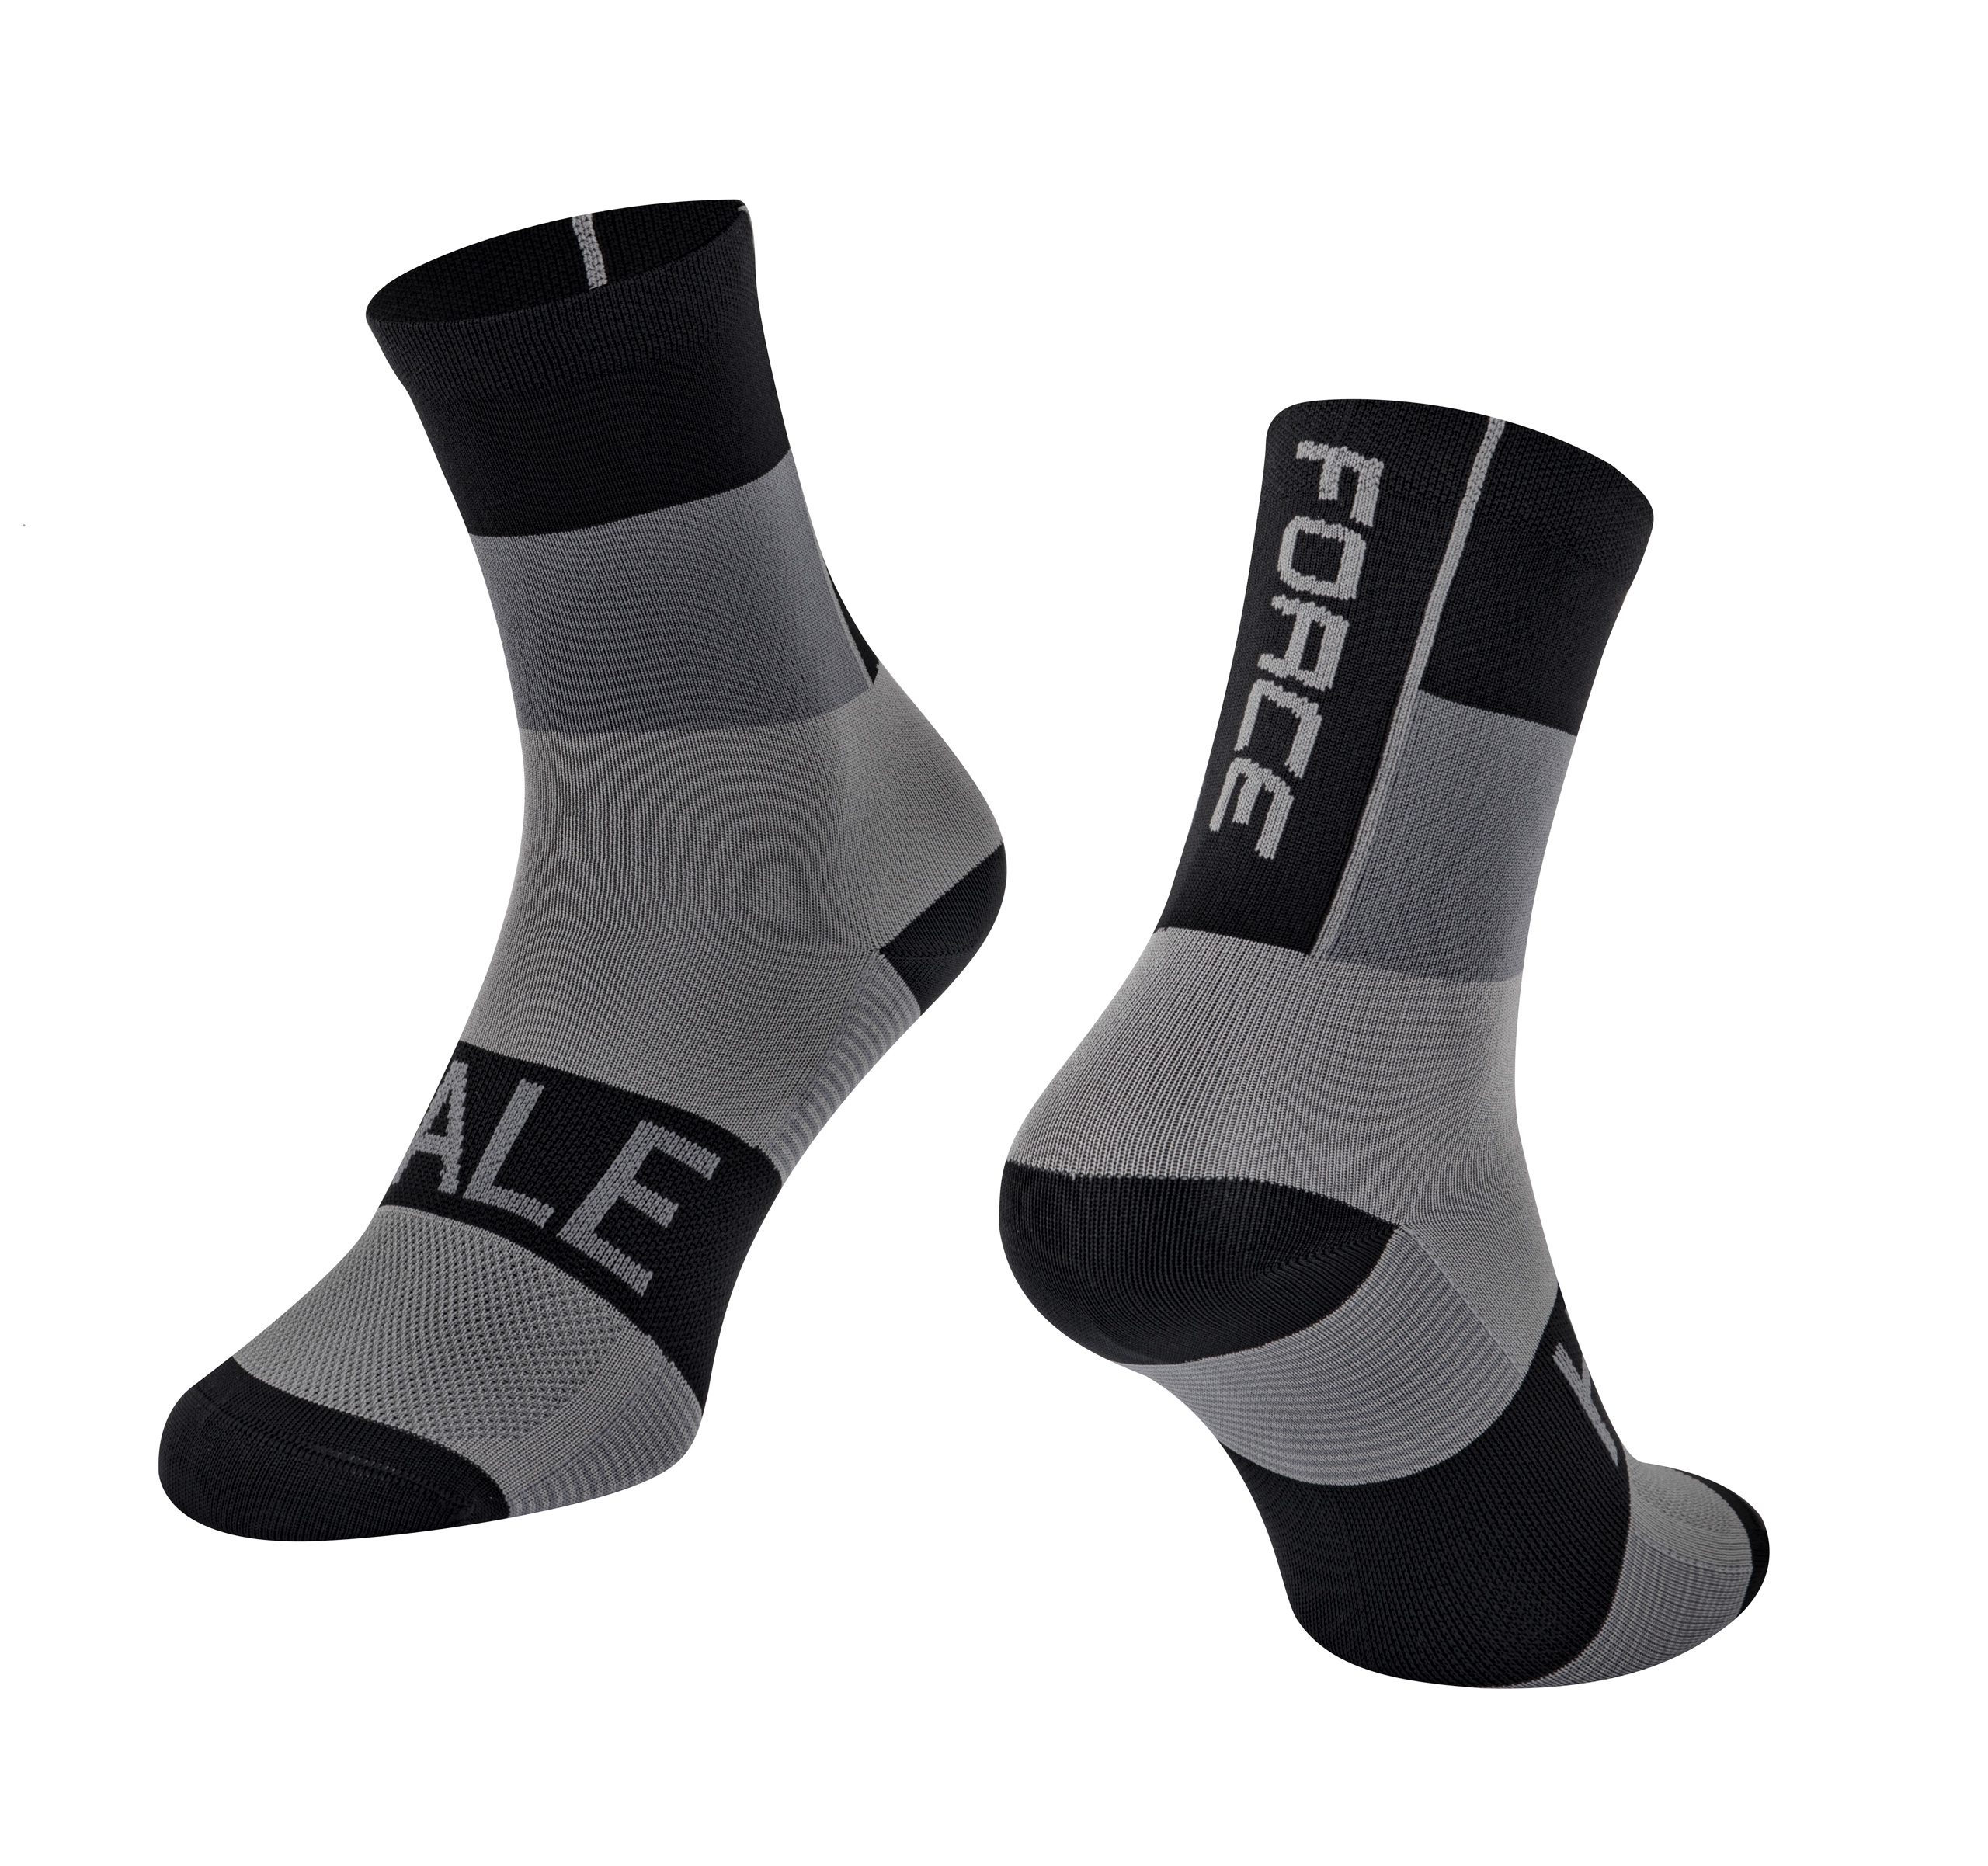 ponožky FORCE HALE, černo-šedé S-M/36-41 Velikost: S-M